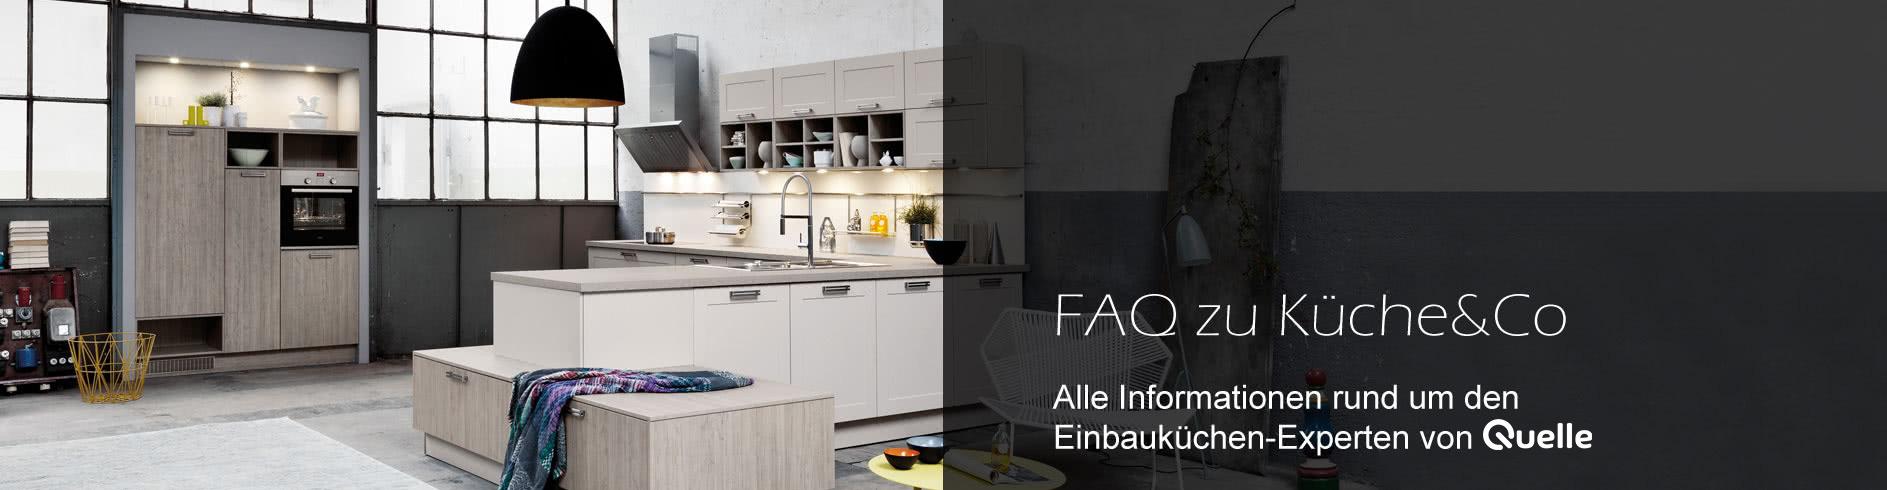 FAQ zu Küche&Co - Alle Informationen rund um den Einbauküchen-Experten von Quelle